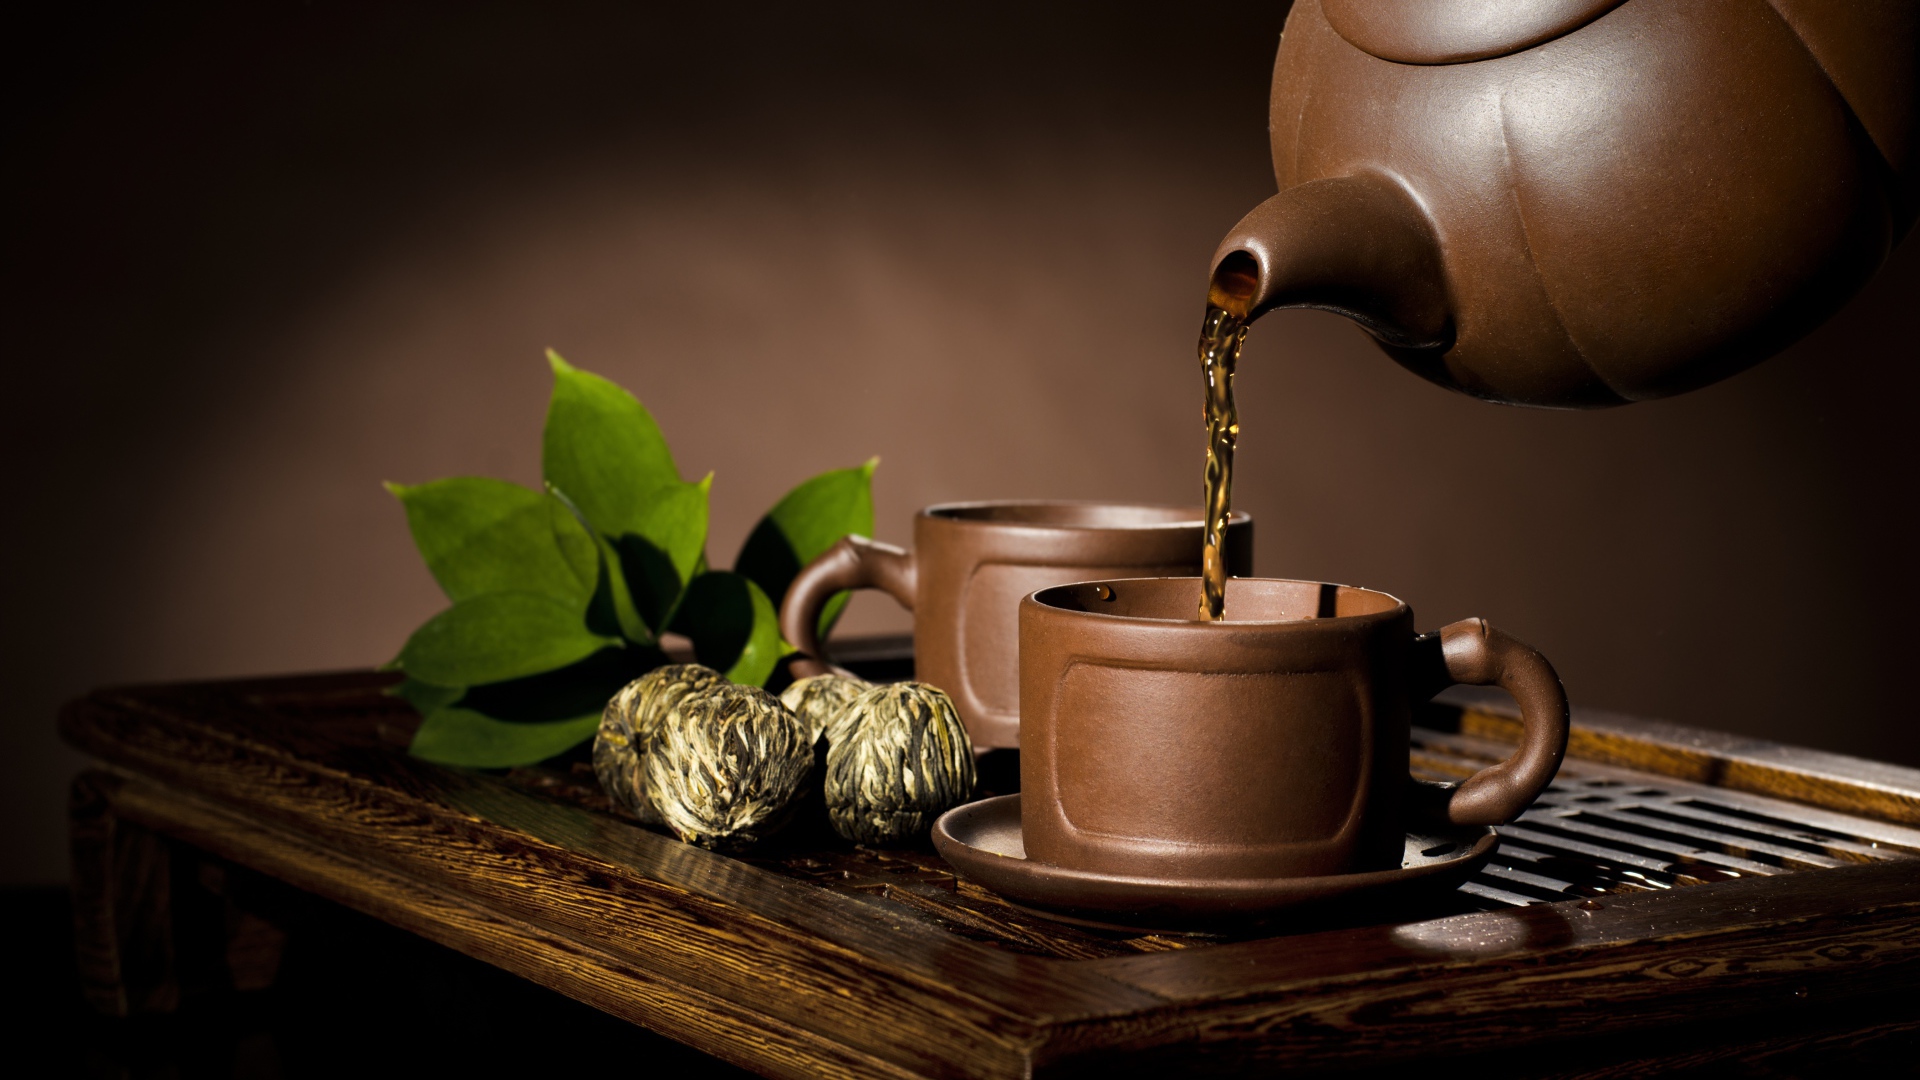 Чай наливают из чайника в коричневую чашку